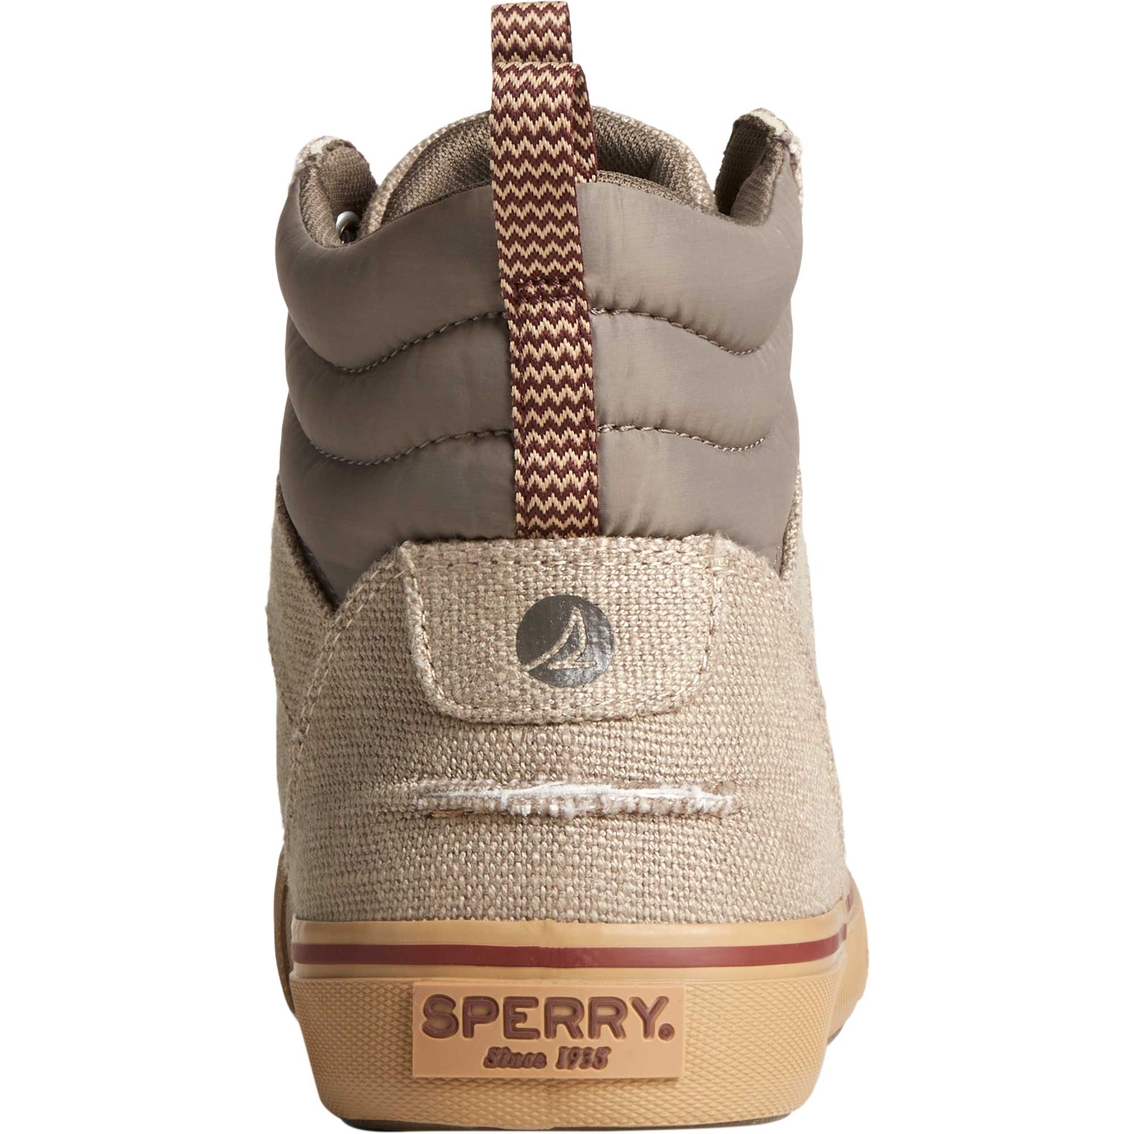 Sperry Men's Striper Storm Hiker Sneakers - Image 6 of 6